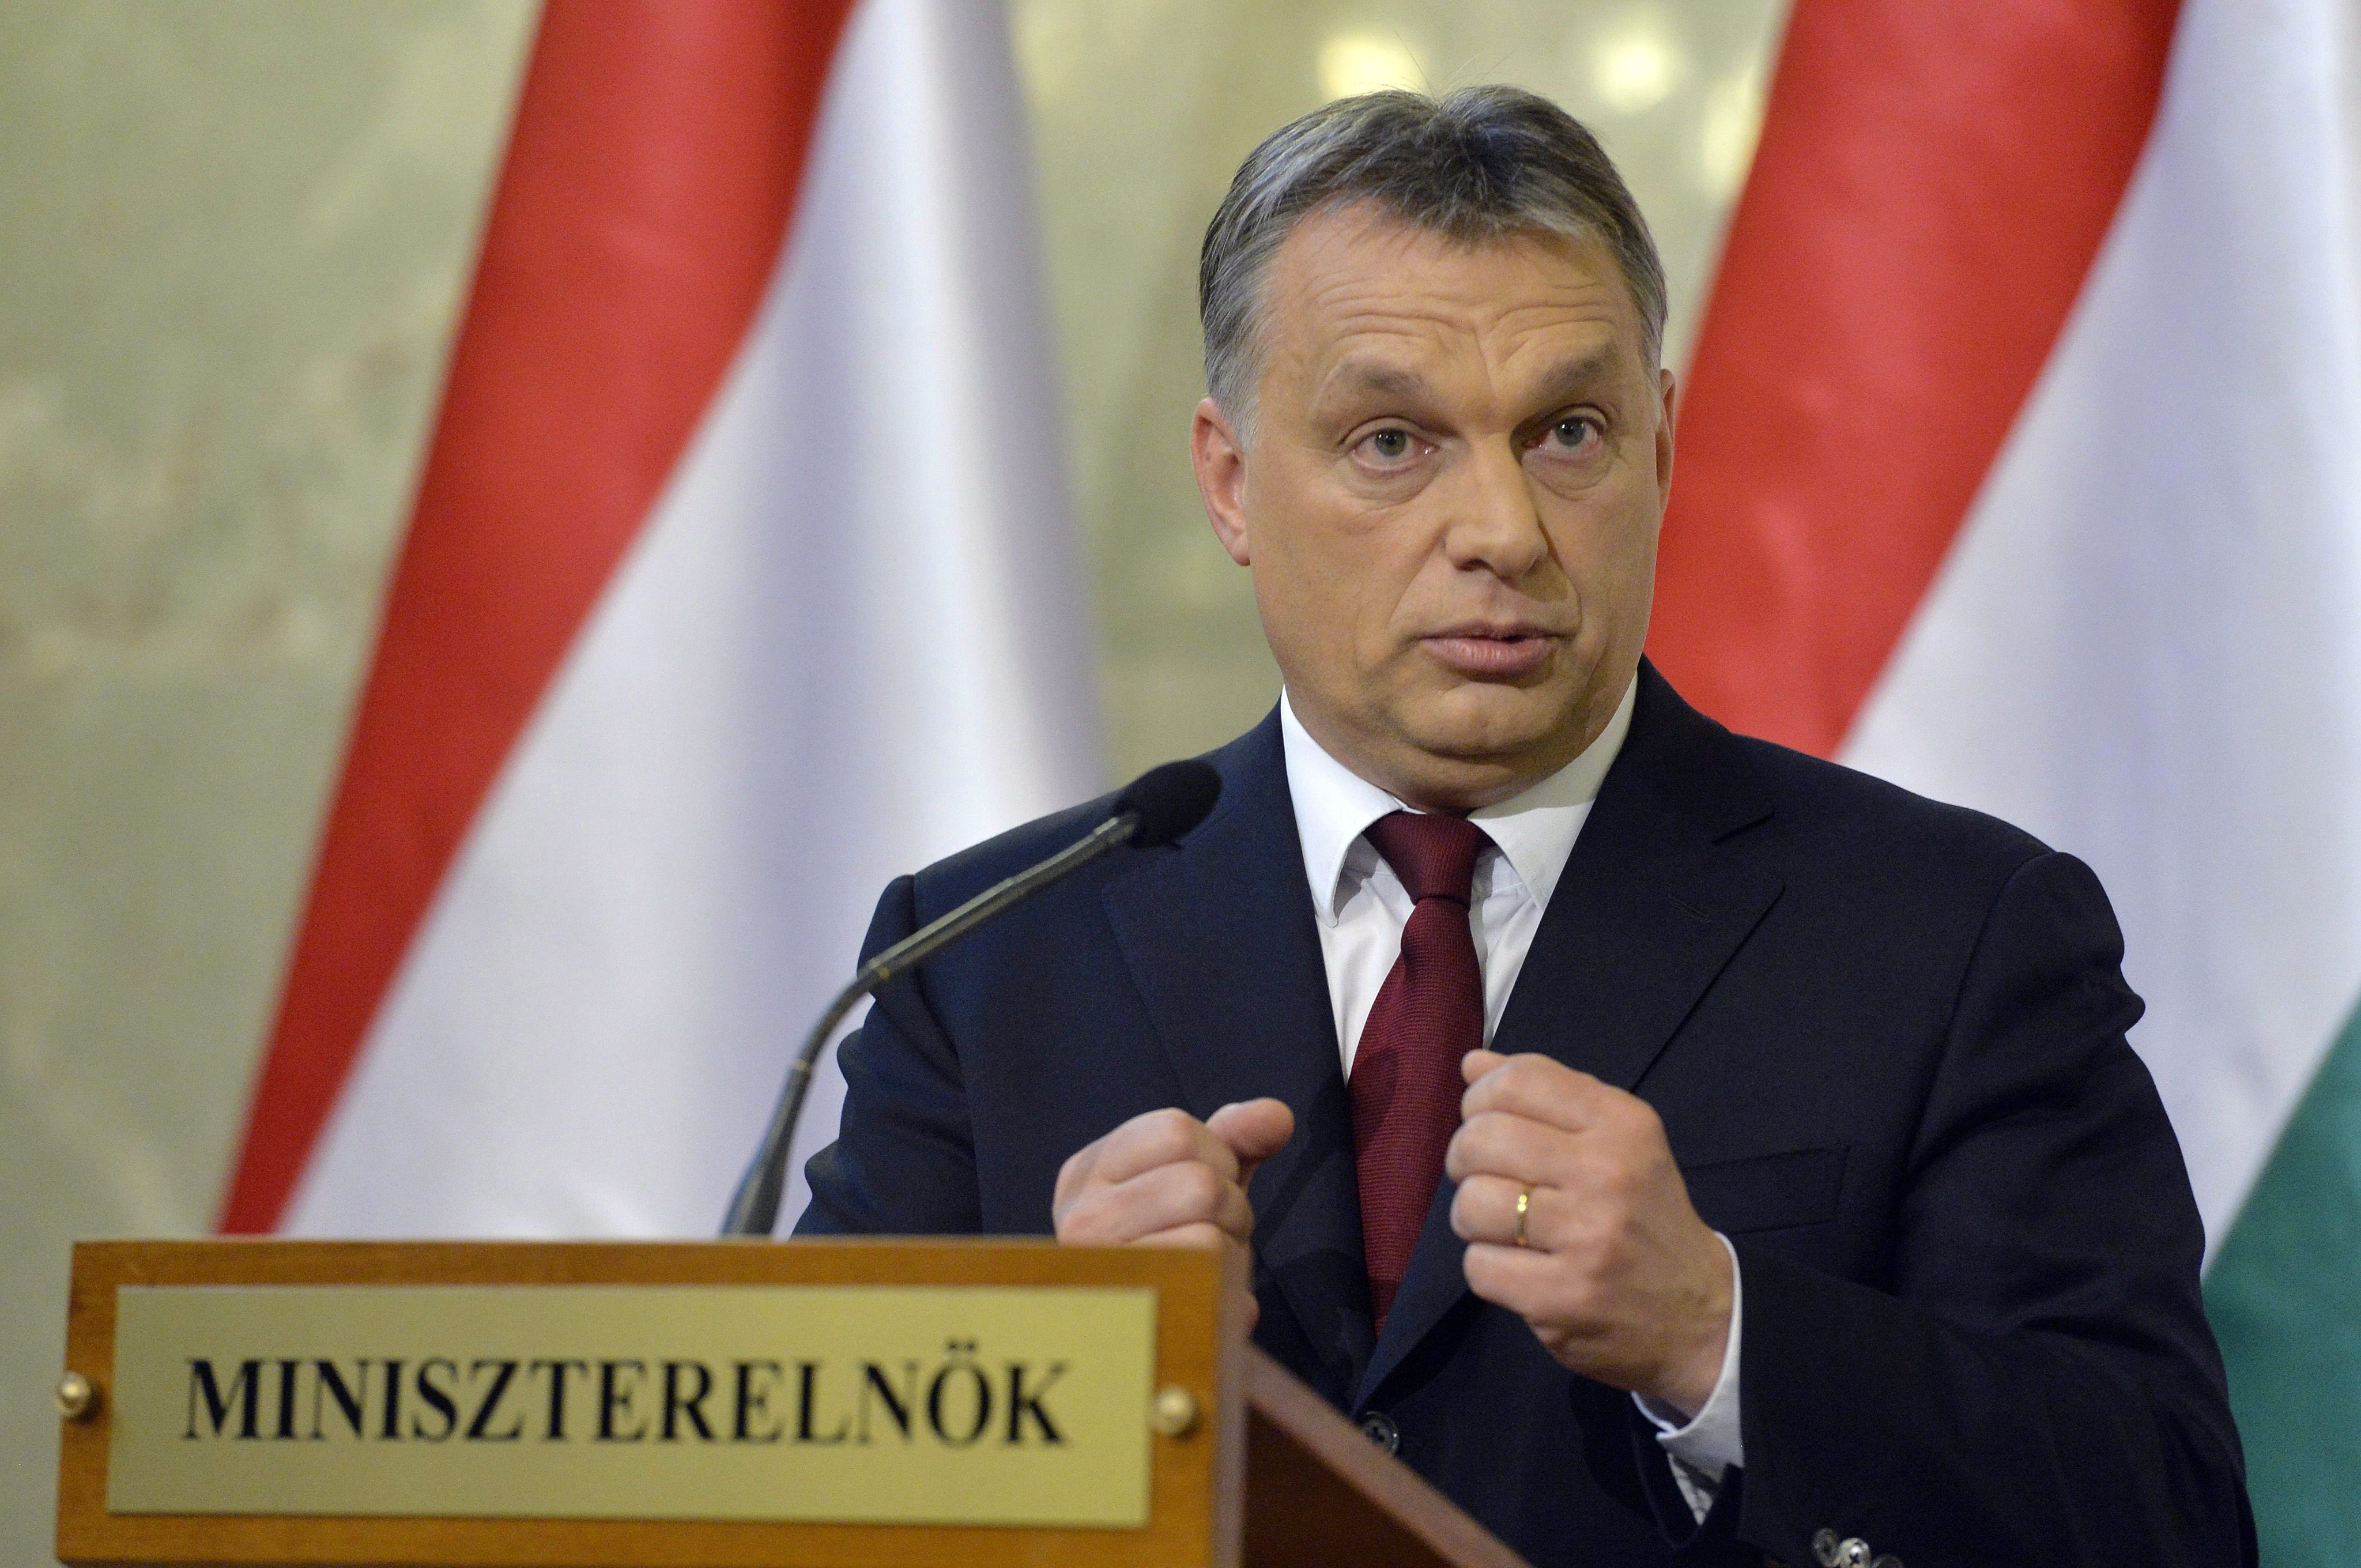 САЩ обезпокоени за Унгария при управлението на Виктор Орбан